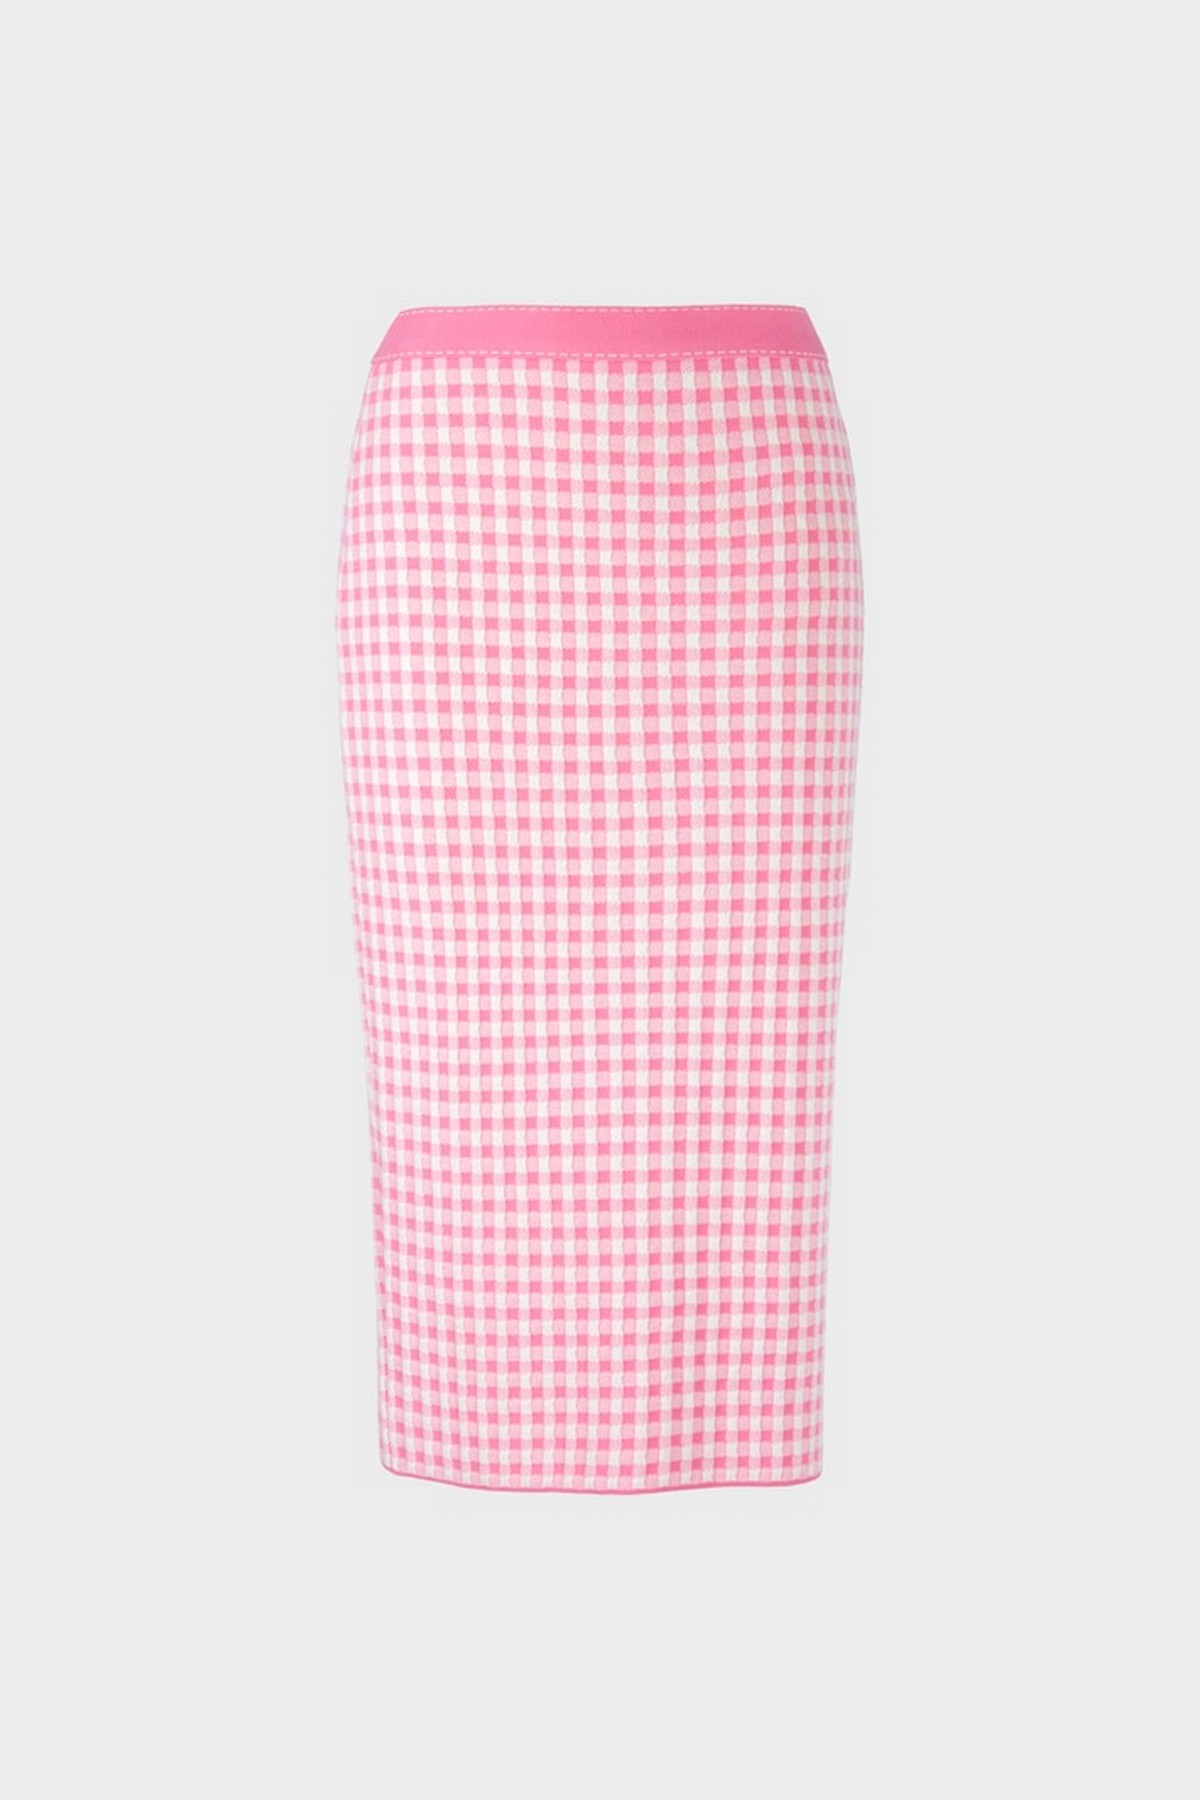 Rok vichy elastisch in de kleur wit roze van het merk Marc Cain Collections